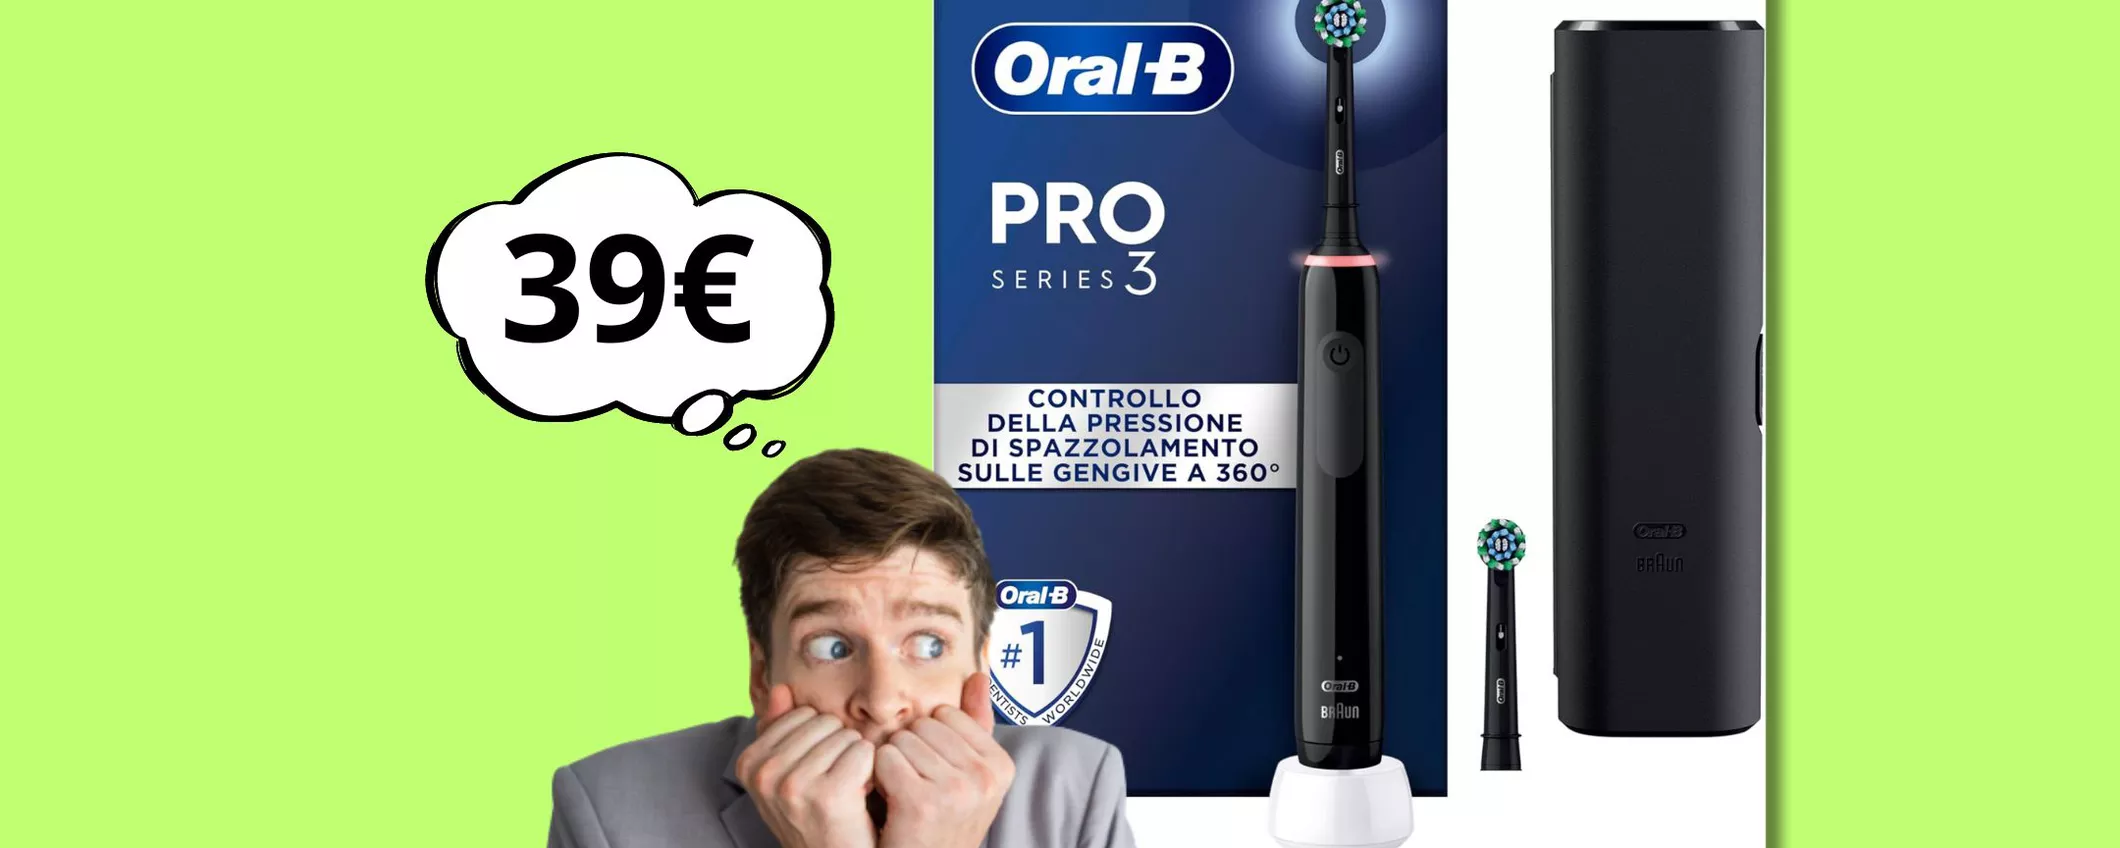 L'OFFERTA che spaventa i dentisti: spazzolino elettrico Oral-B a soli 39 euro!